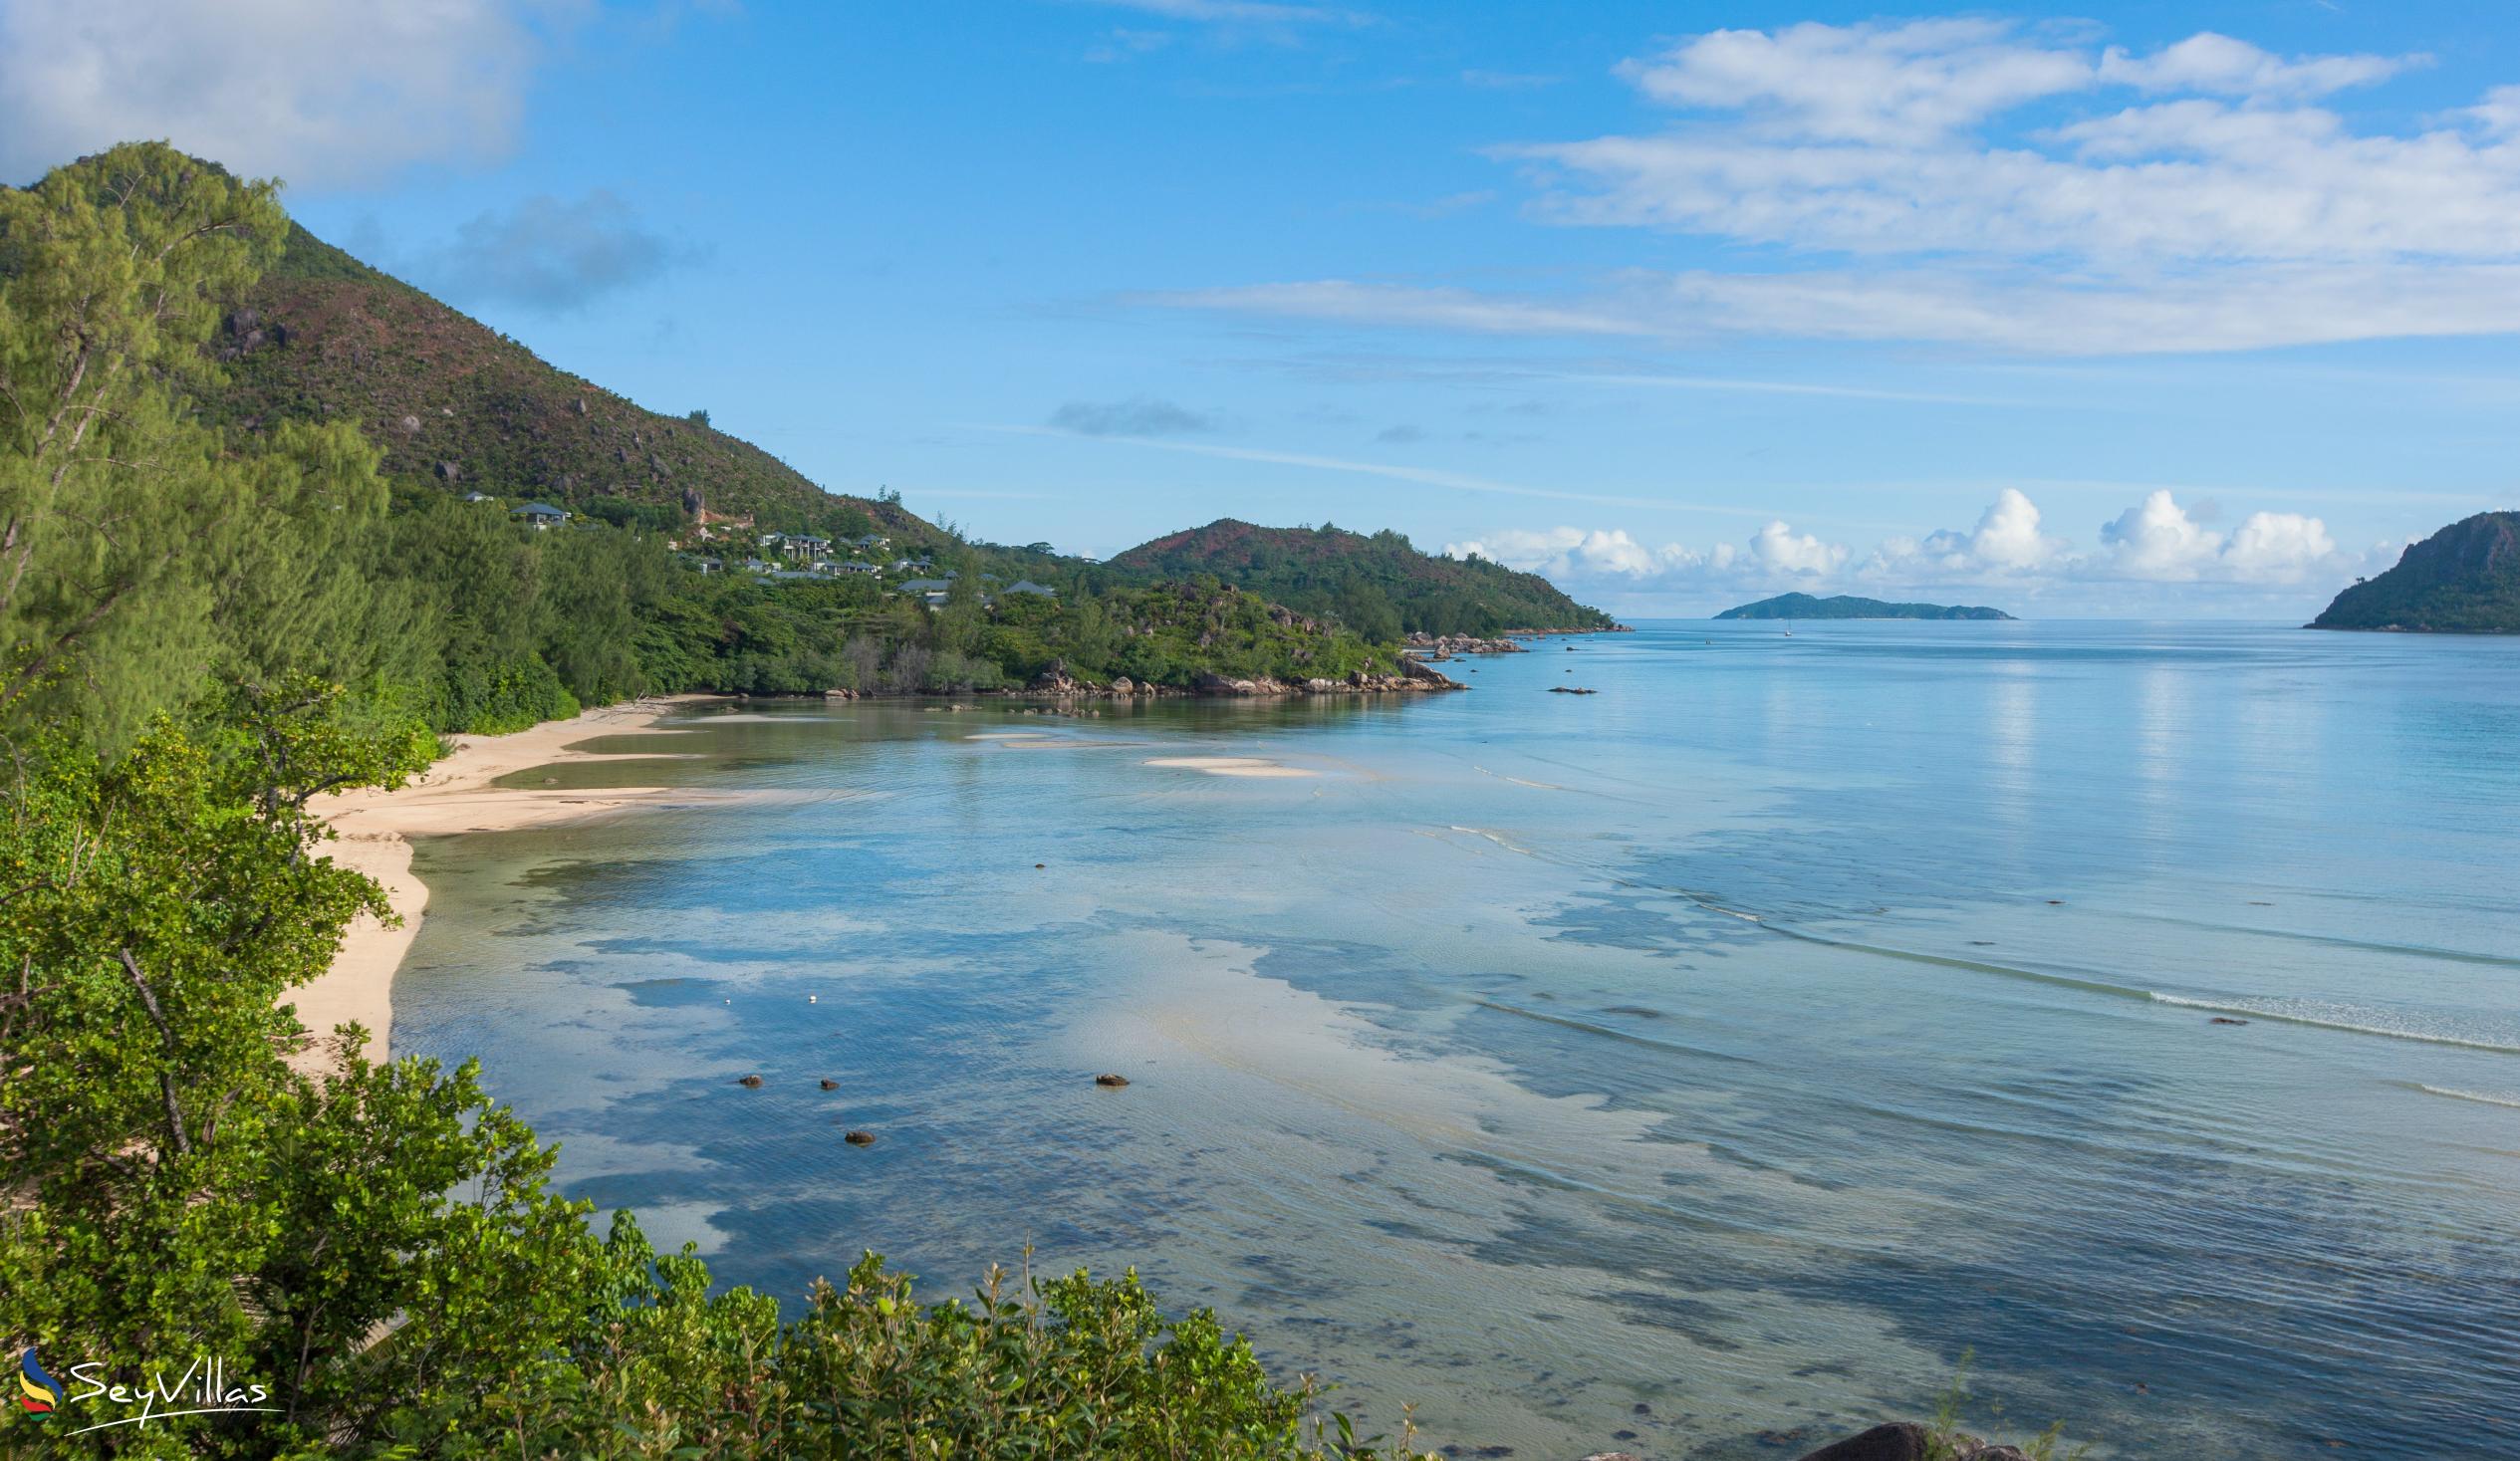 Foto 1: Anse Pasquière - Praslin (Seychelles)